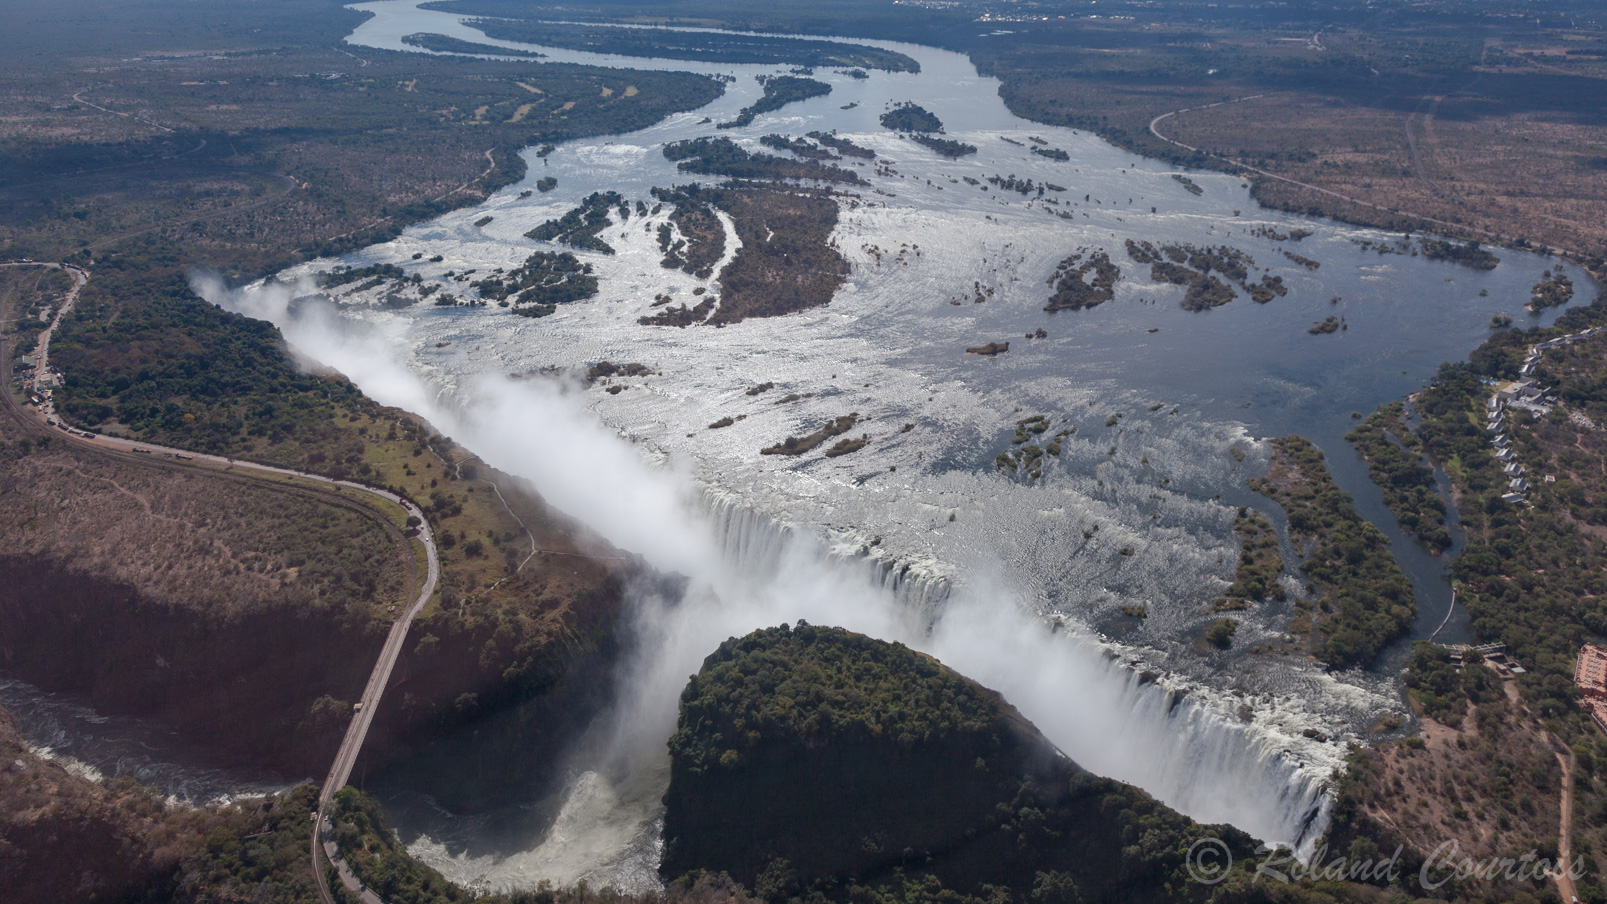 Impressionante faille géologique, les chutes Victoria sont inscrites au patrimoine mondial de l'UNESCO.